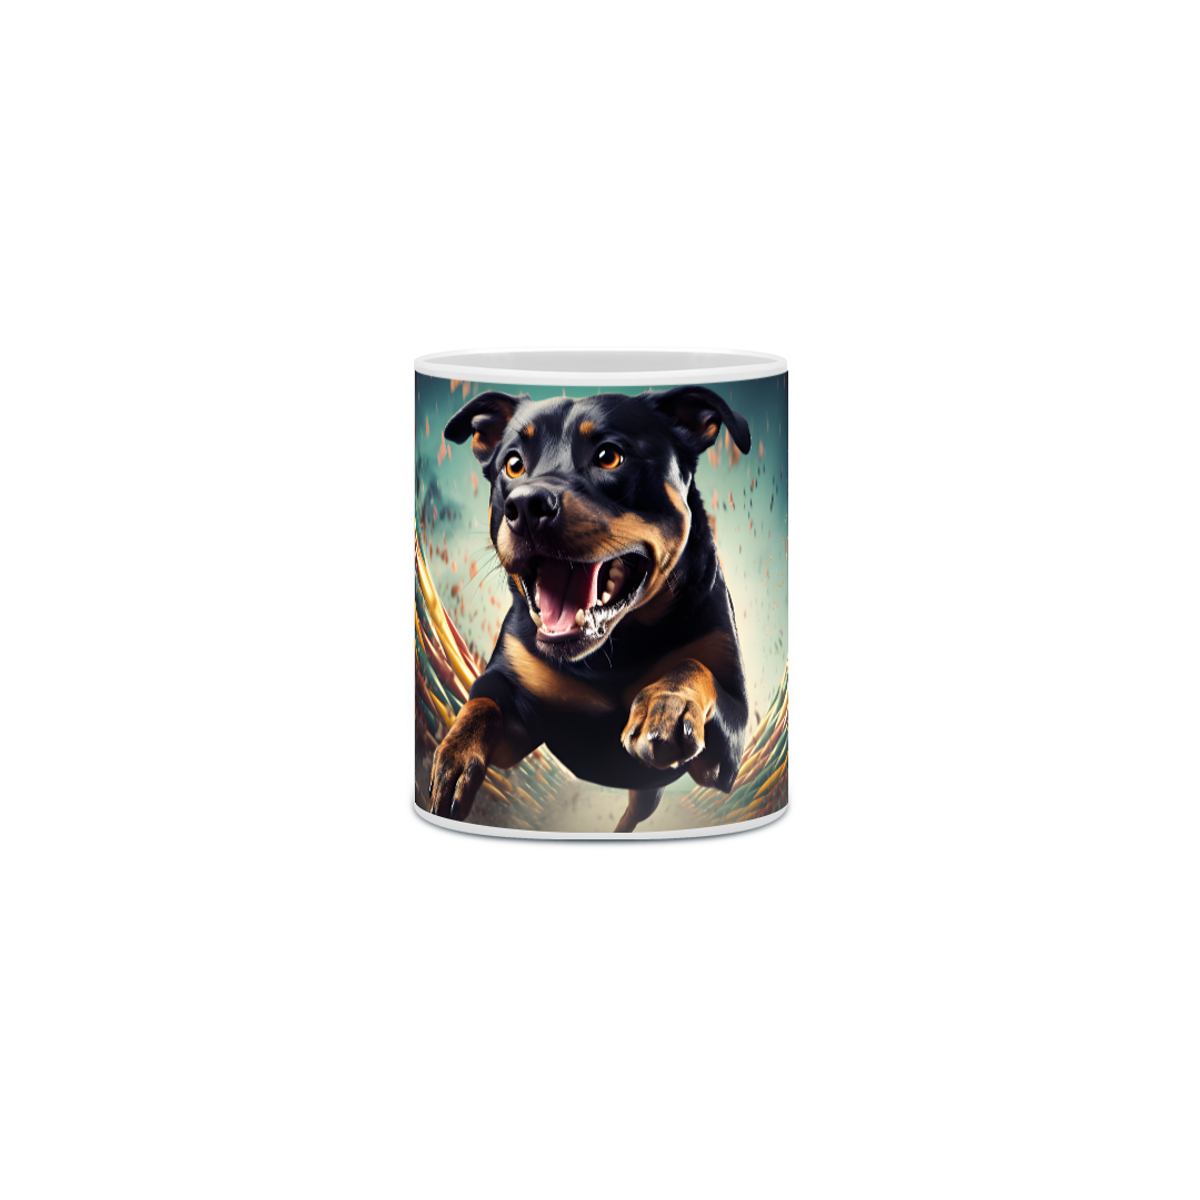 Nome do produto: Caneca Rottweiler com Arte Digital - #Autenticidade 0006